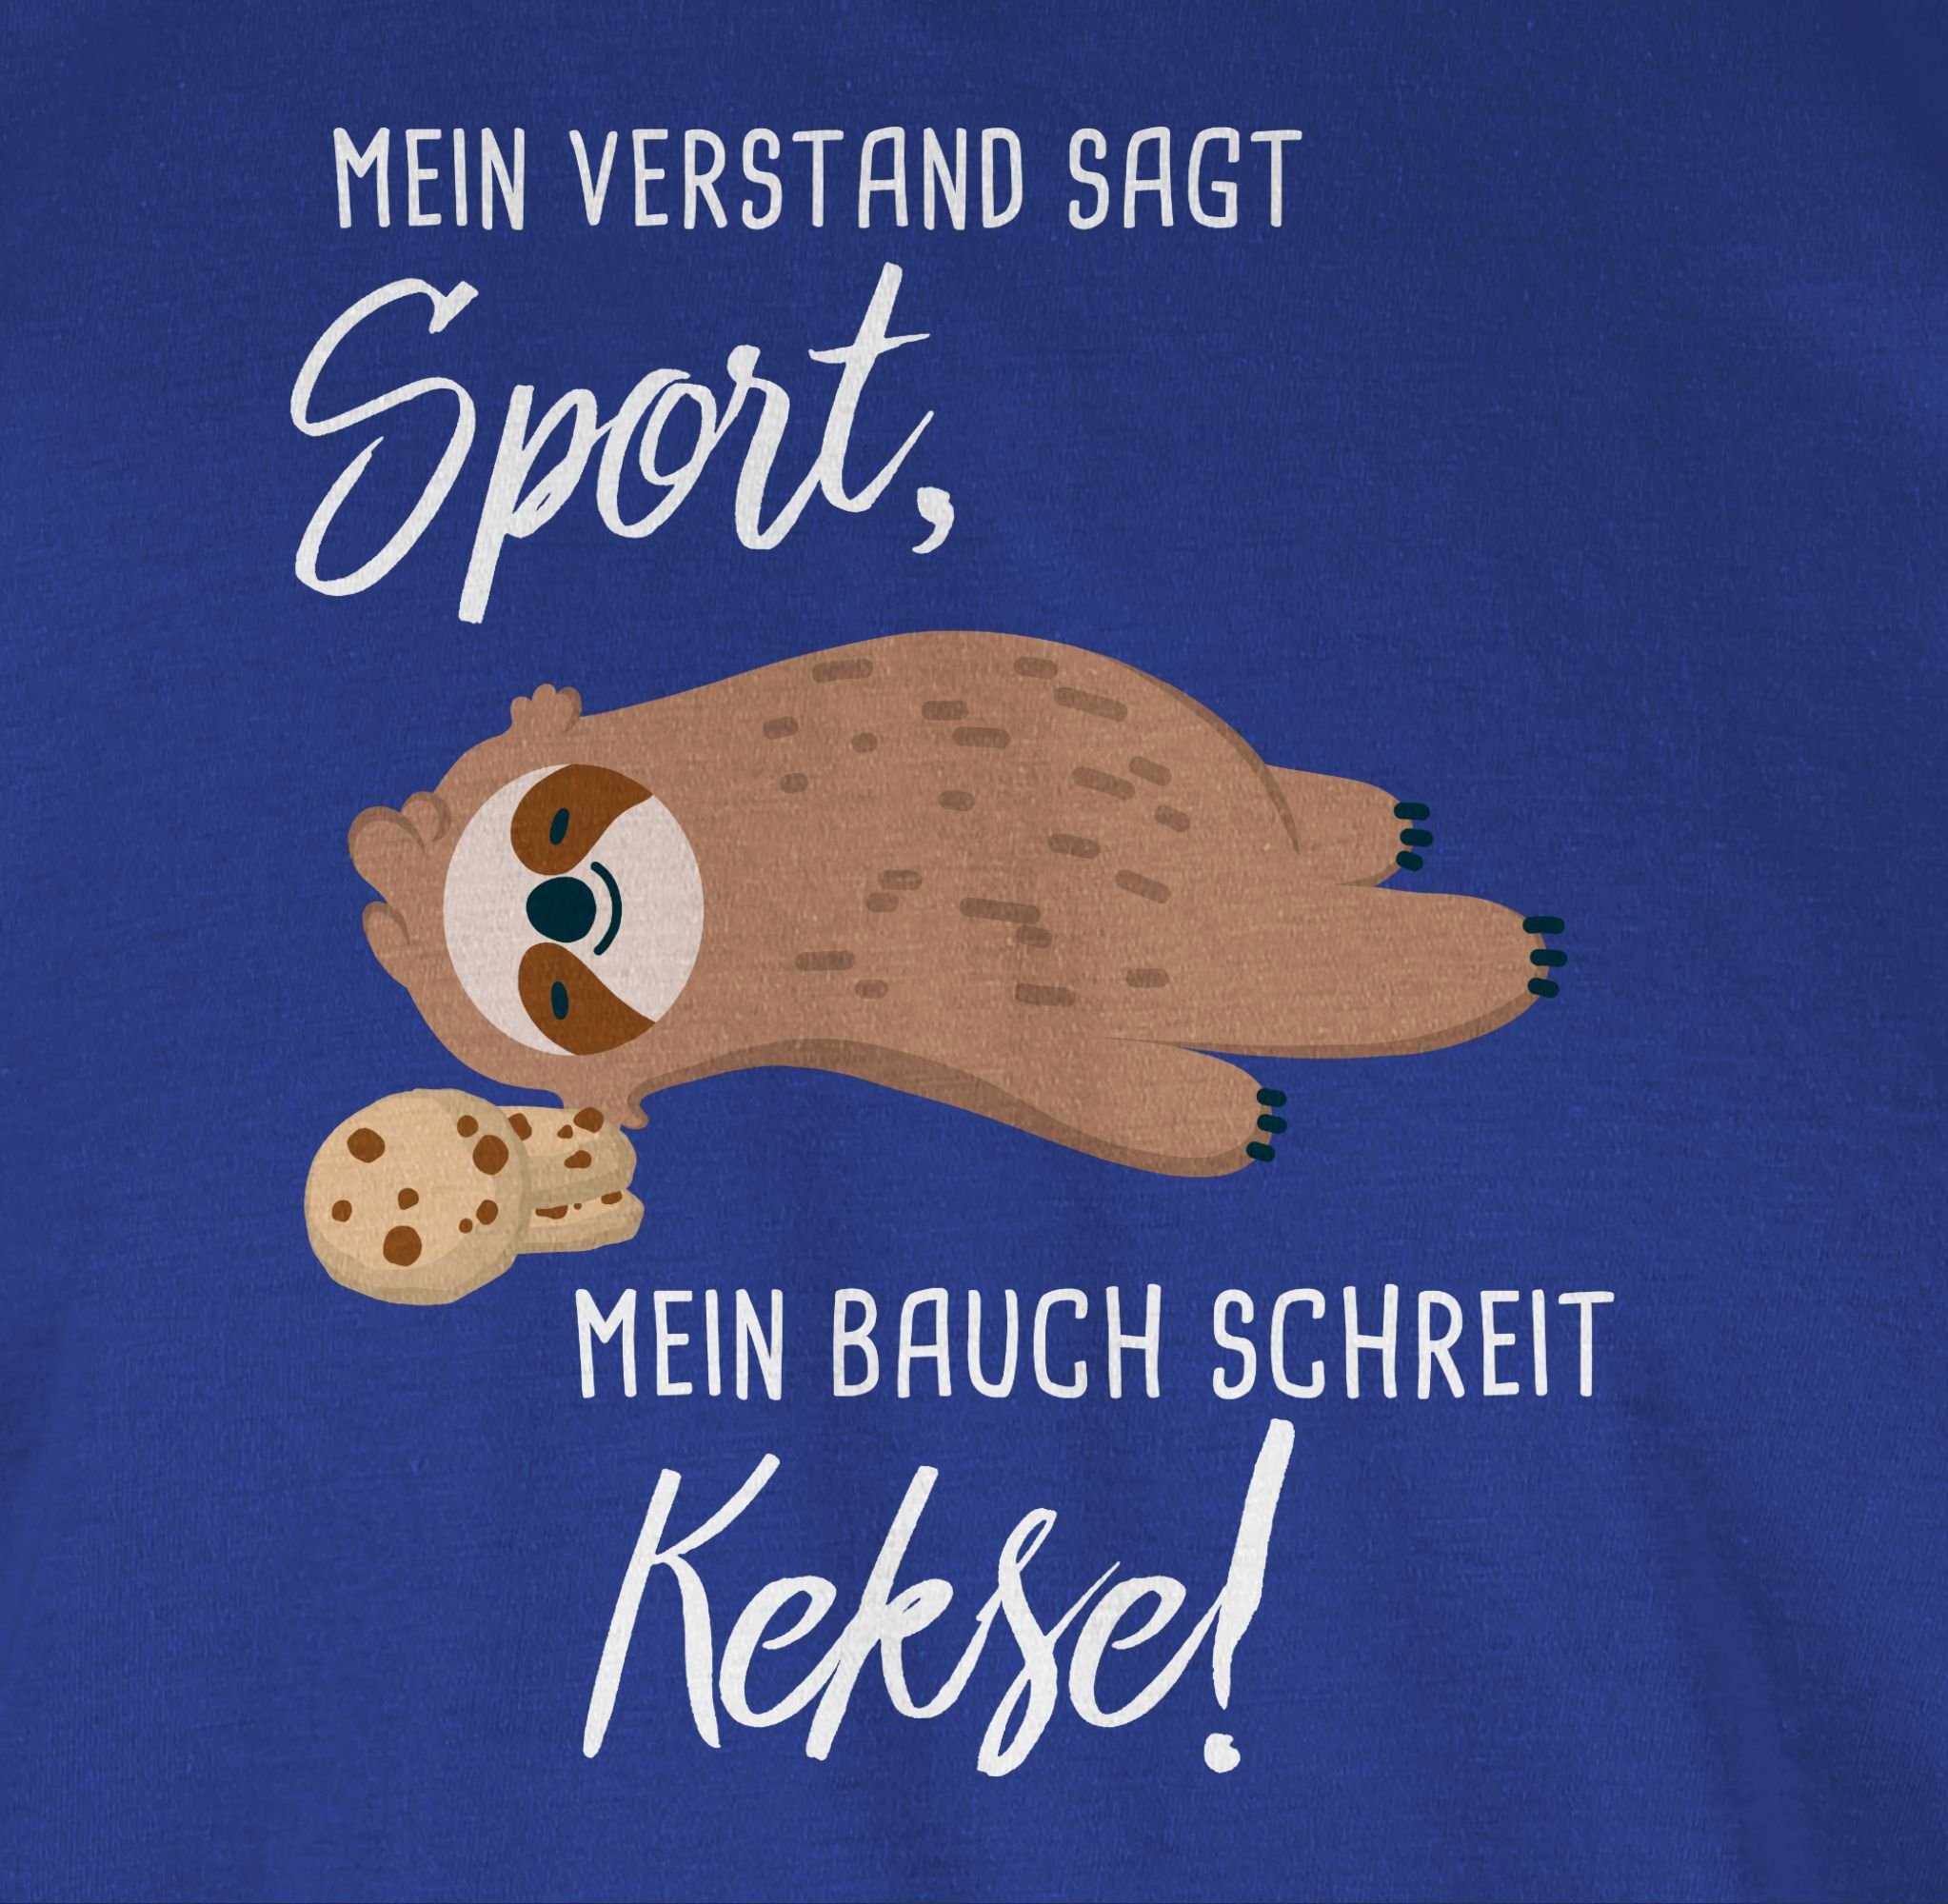 schreit Bauch 03 Sprüche Faultier T-Shirt Shirtracer Royalblau Kekse! Mein Statement